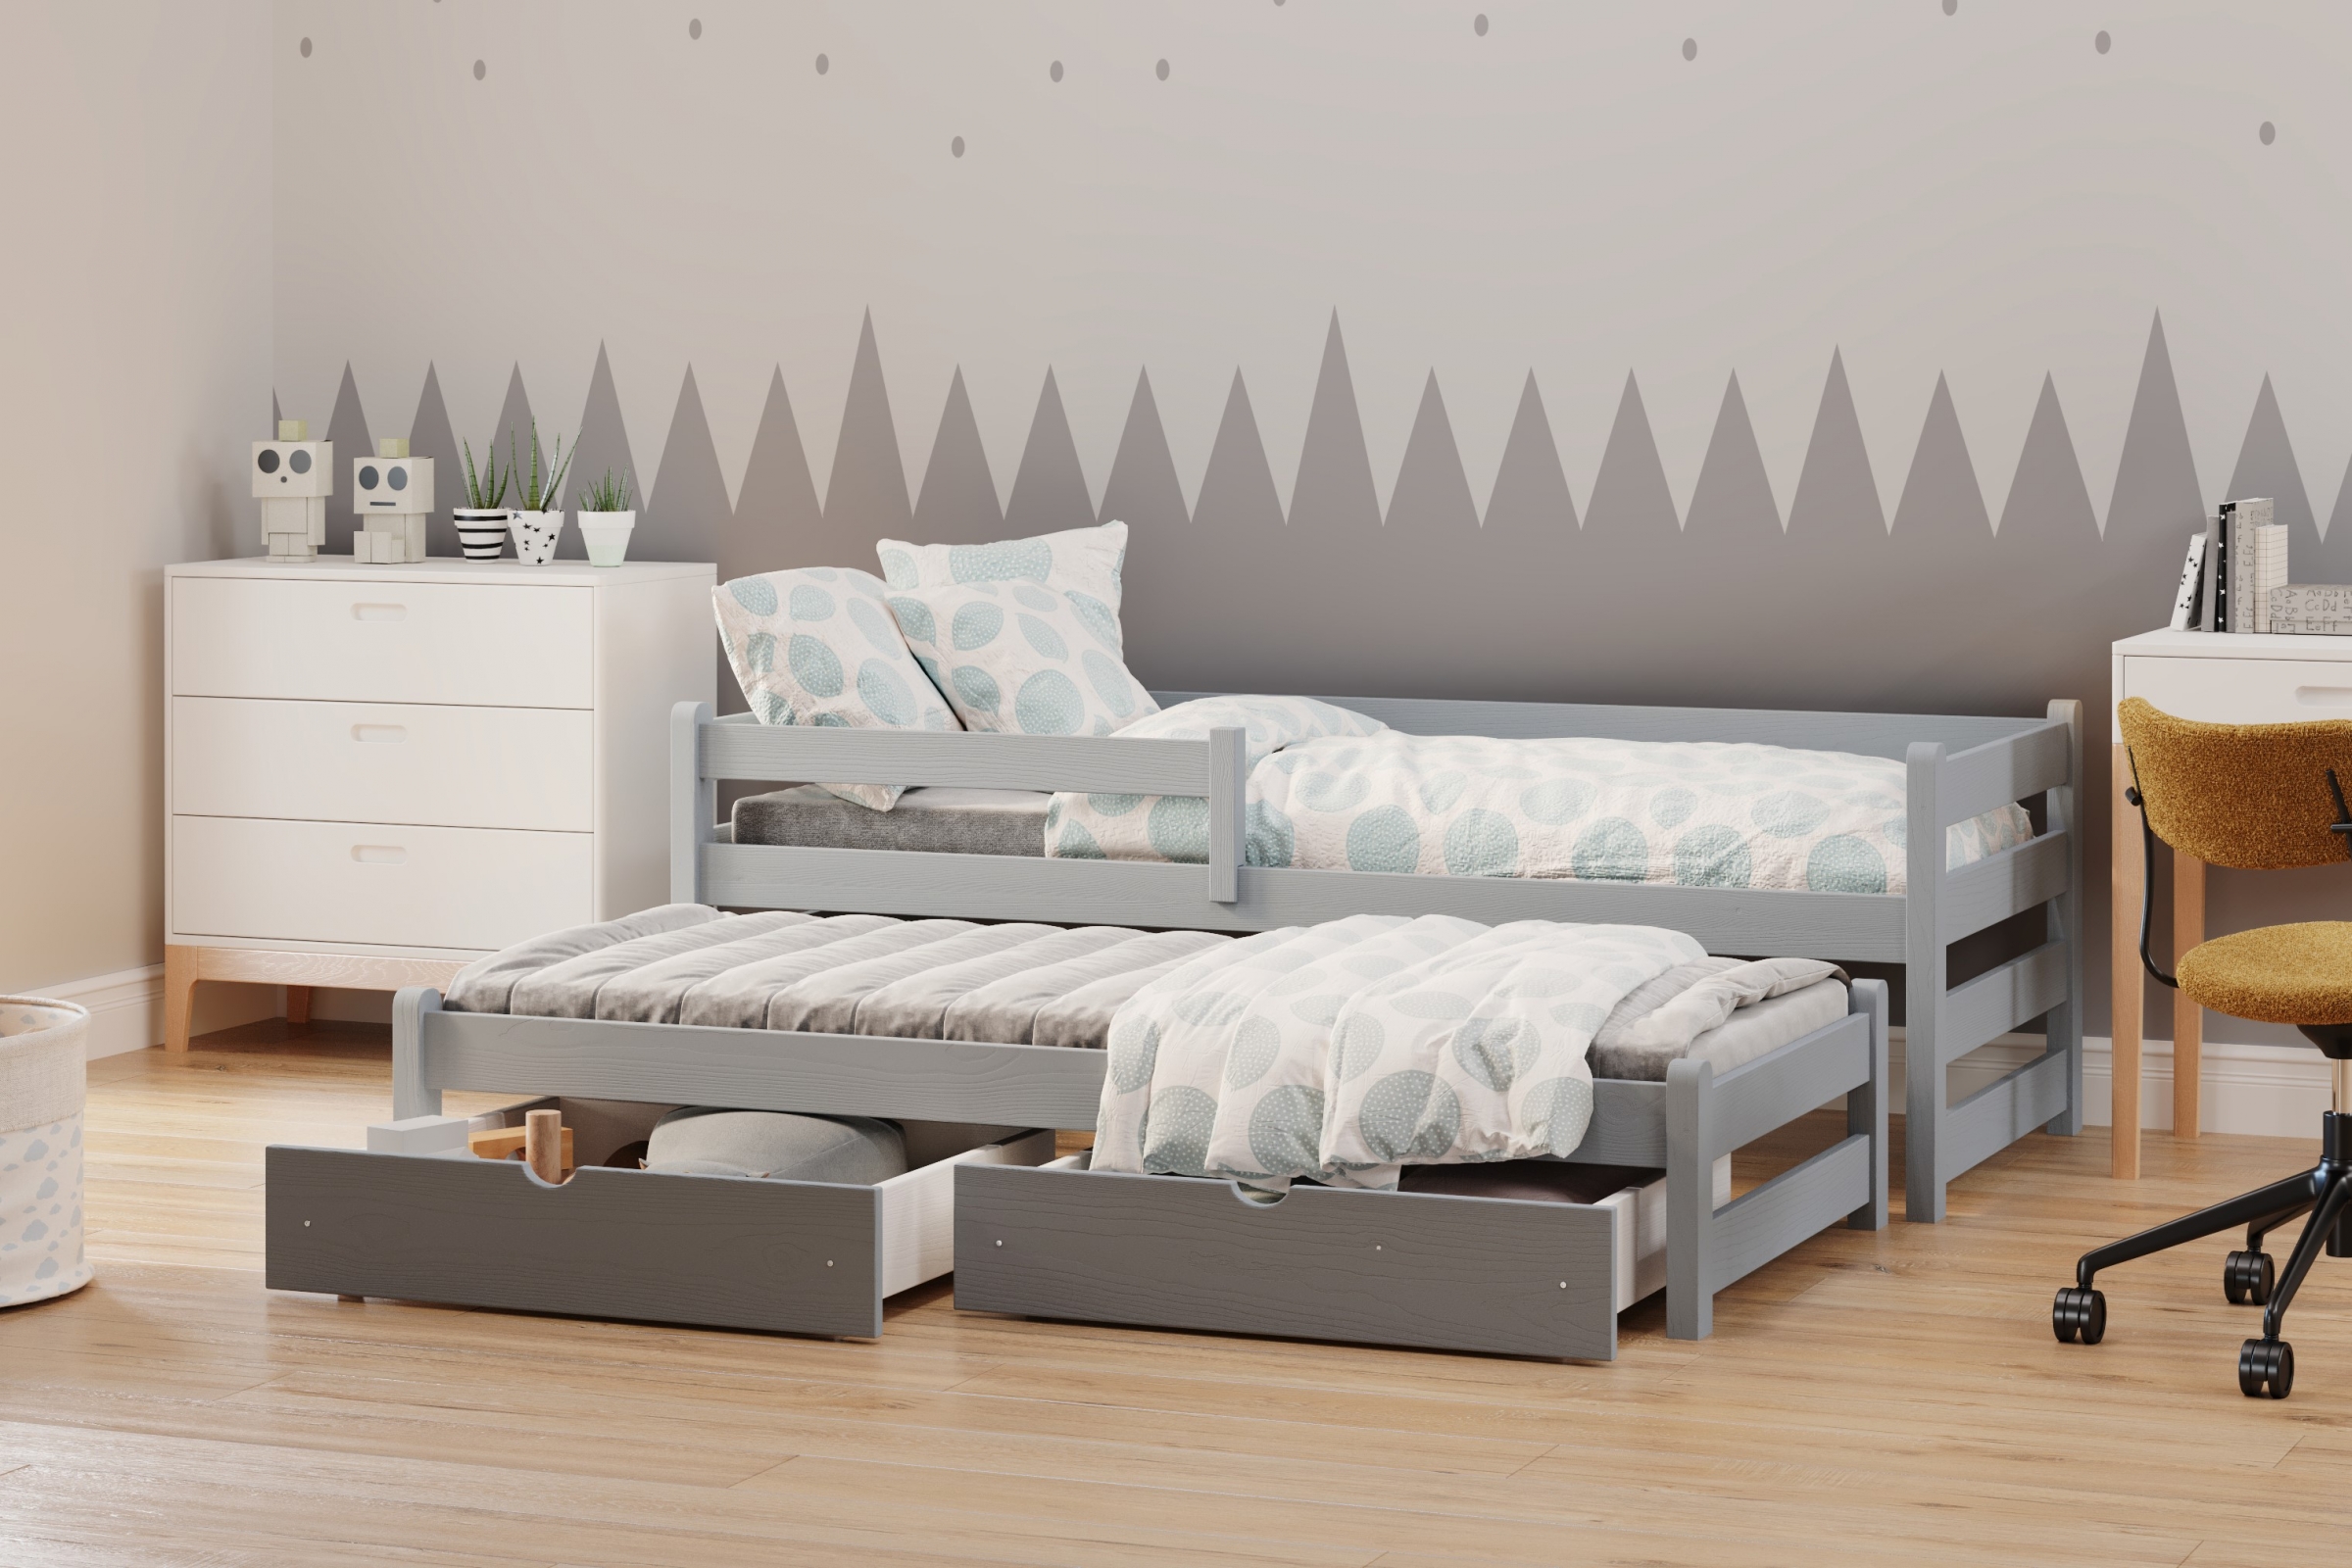 Detská posteľ prízemná s výsuvným lôžkom Alis DPV 001 - šedý, 80x190 Posteľ prízemná s výsuvným lôžkom Alis - Farba šedý - vizualizácia